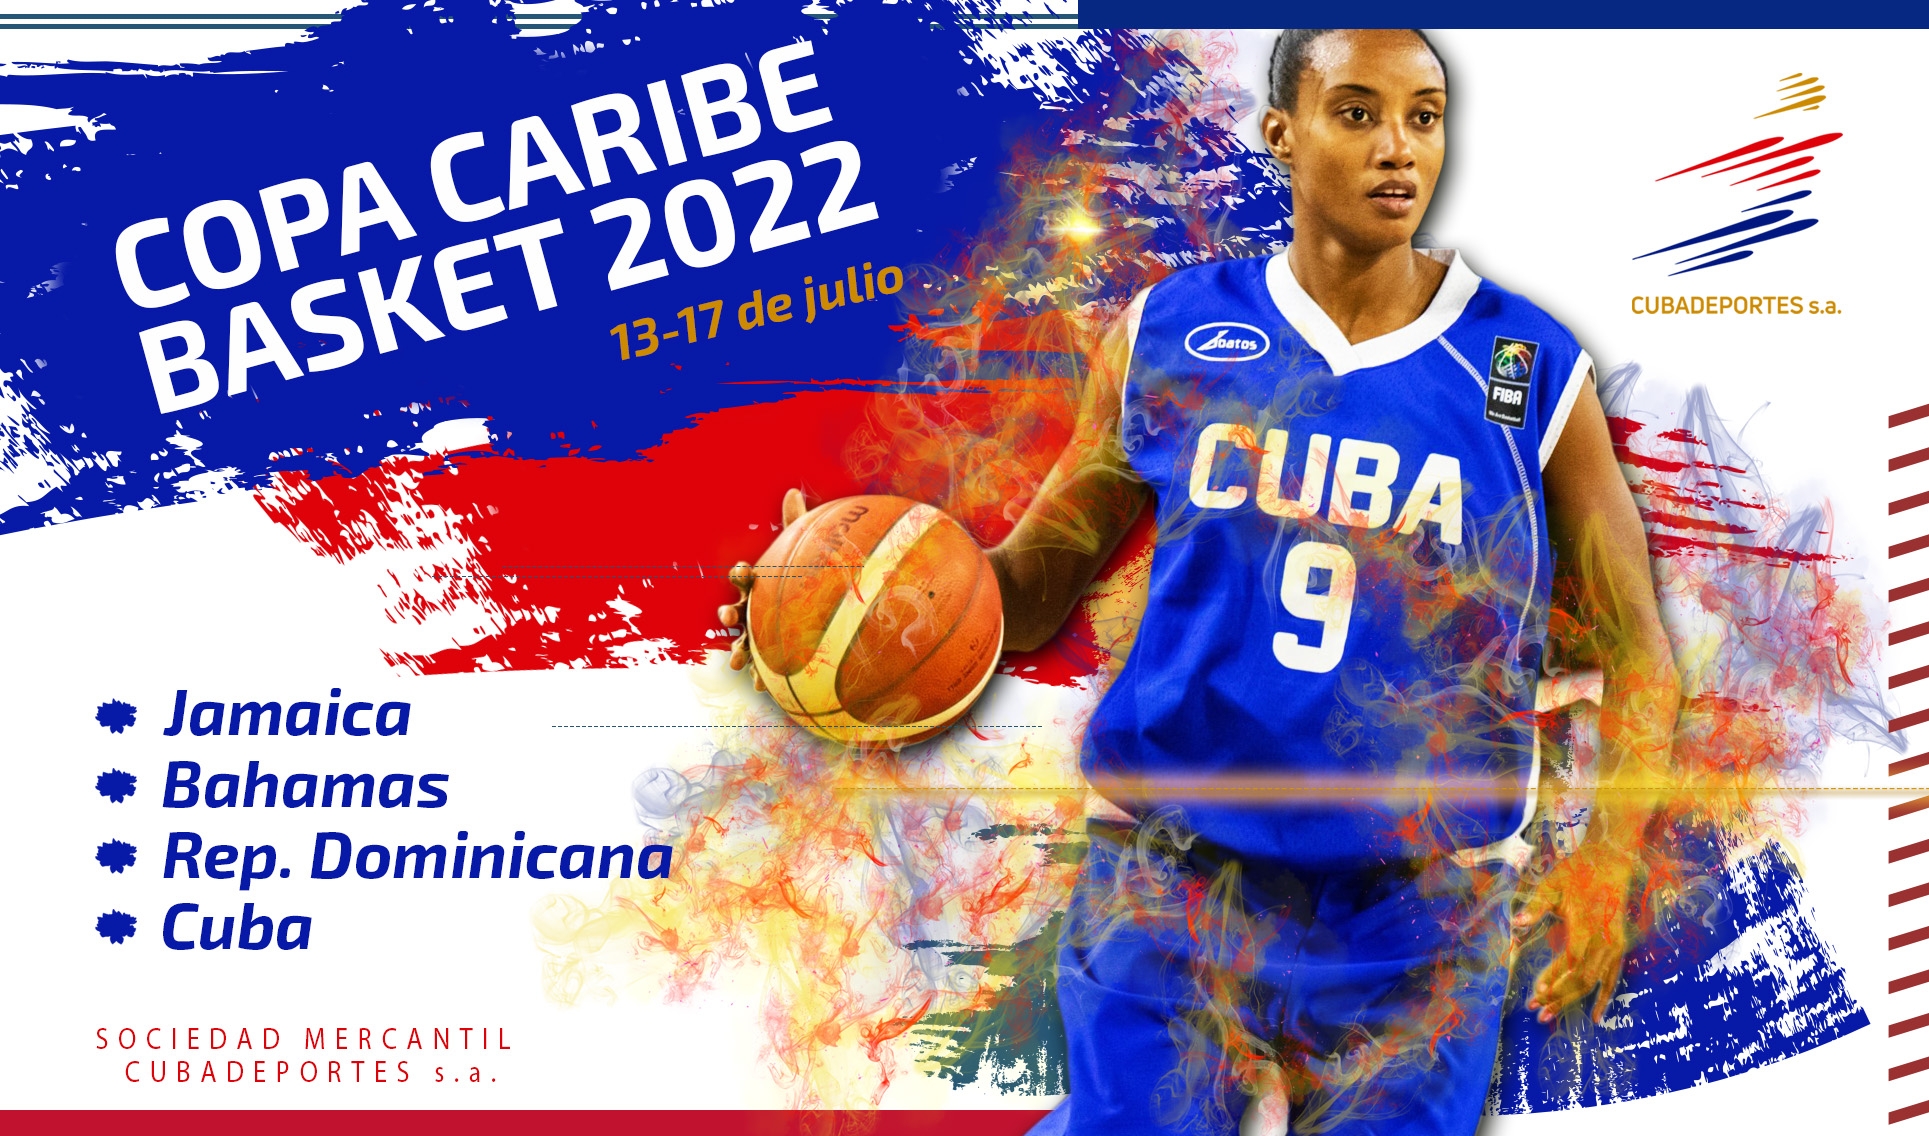 Del 13-17 de julio se estará celebrando la Copa Caribe de Baloncesto 